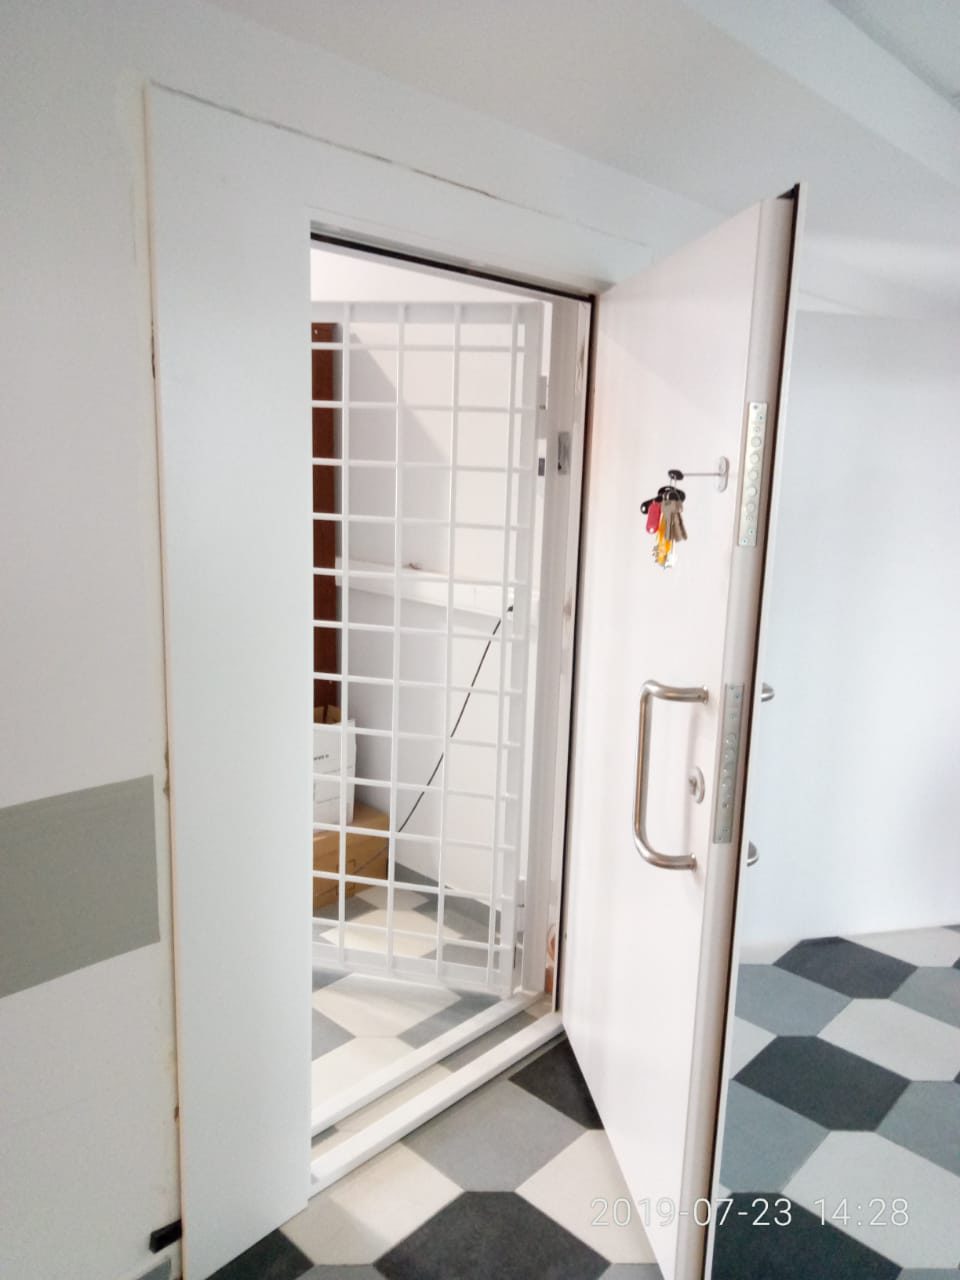 Двери и окна в кассы судов ООО "МТМ-ПРО"